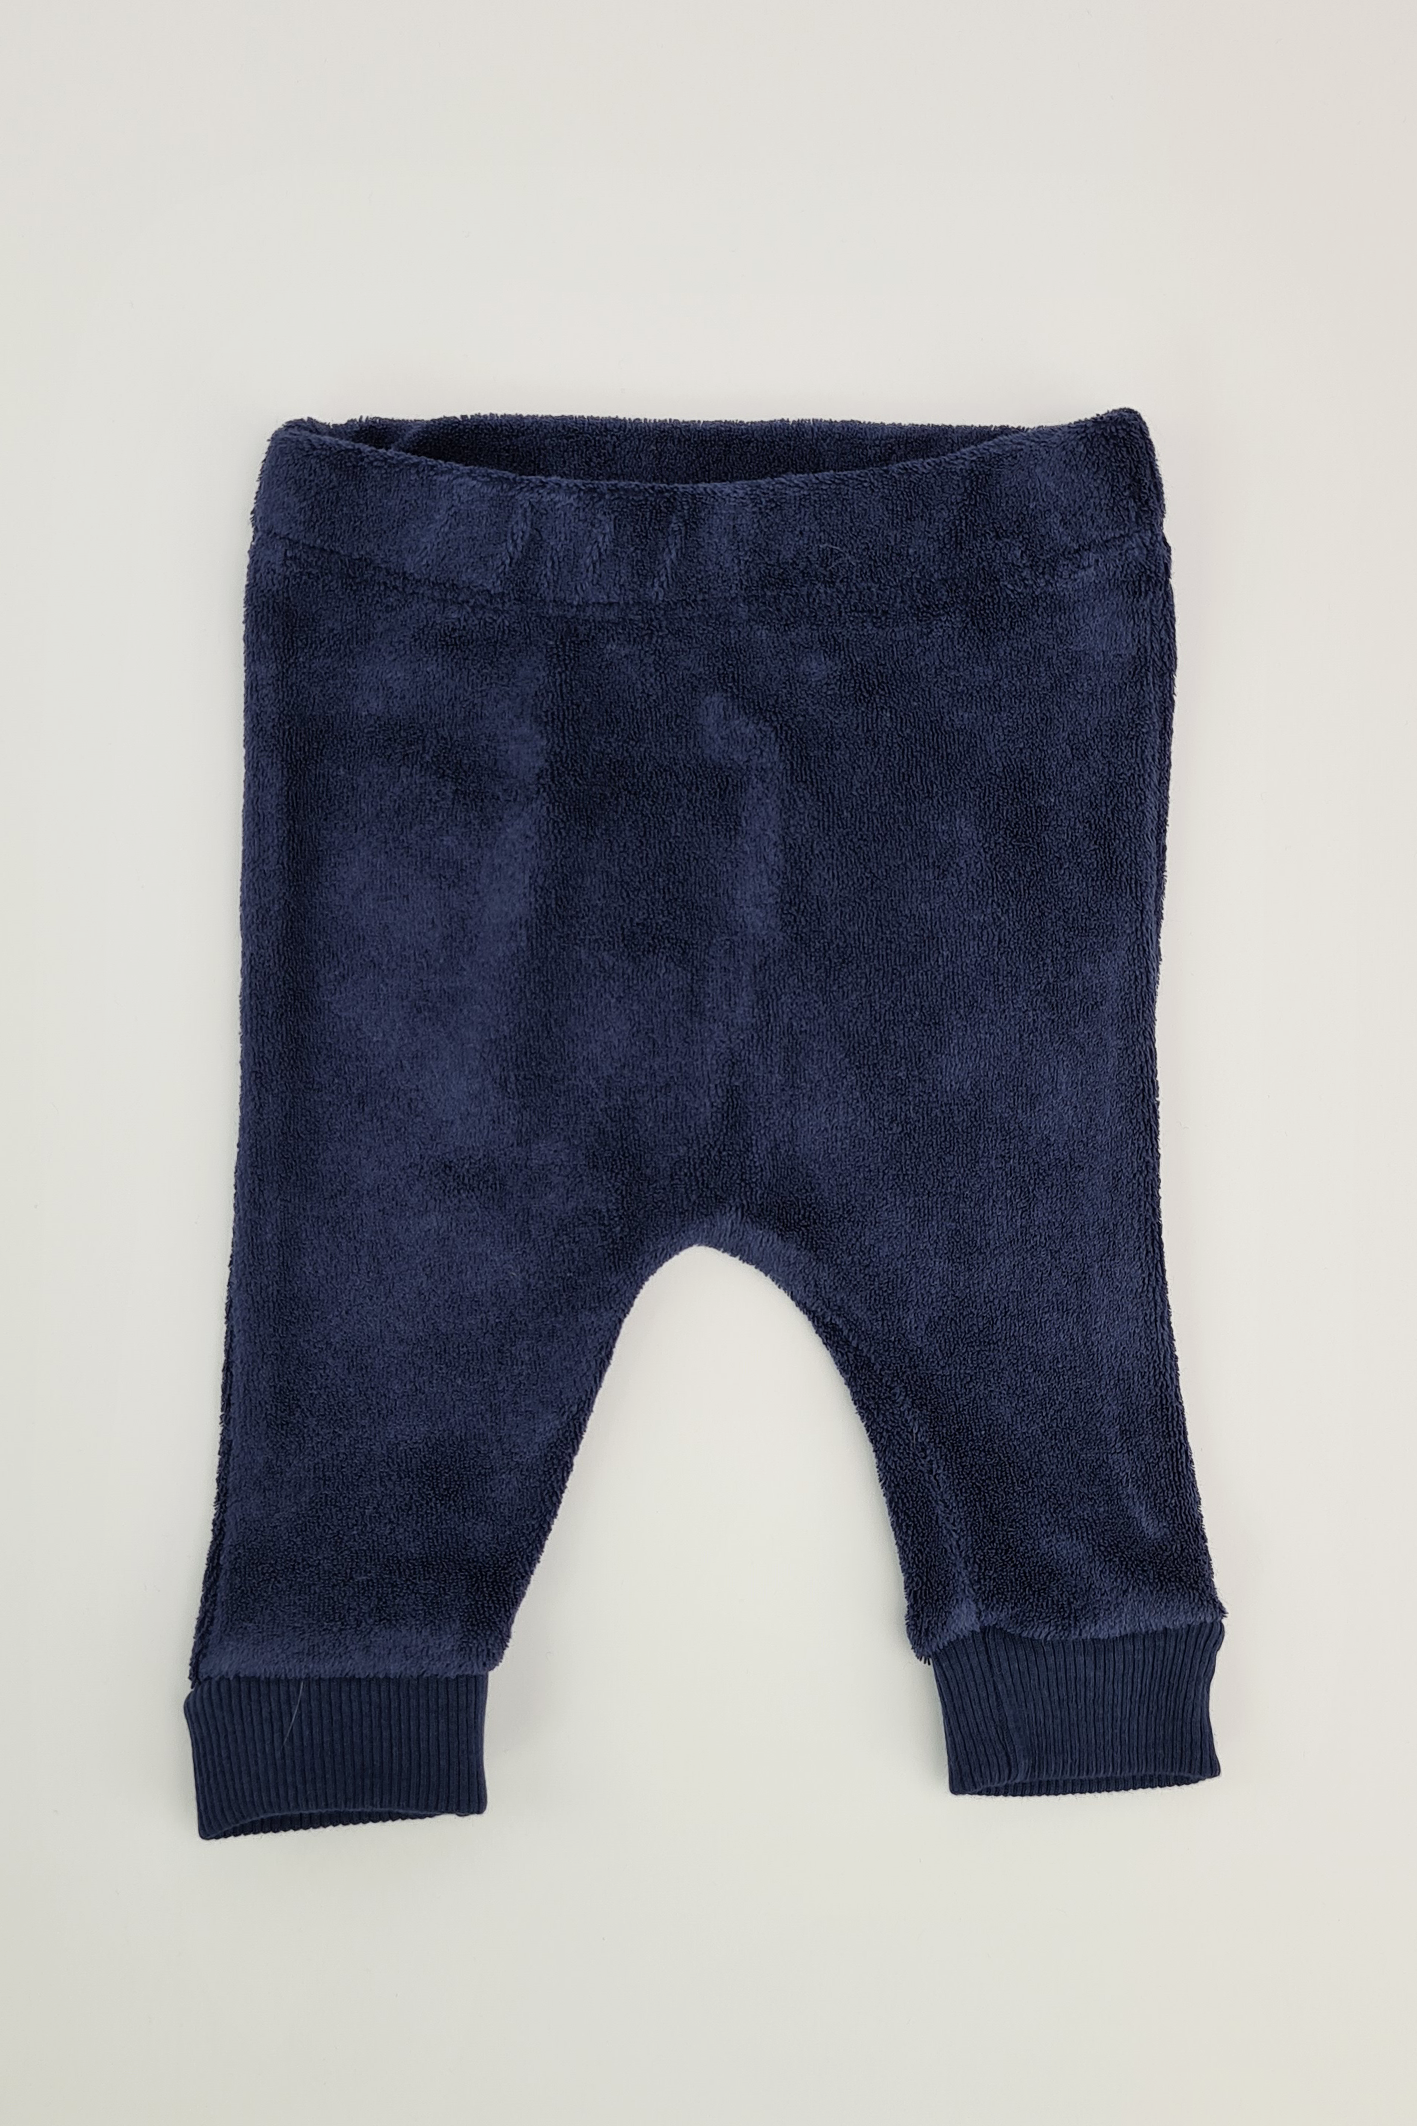 Tiny Baby - Pantalon de jogging bleu marine (Matalan)